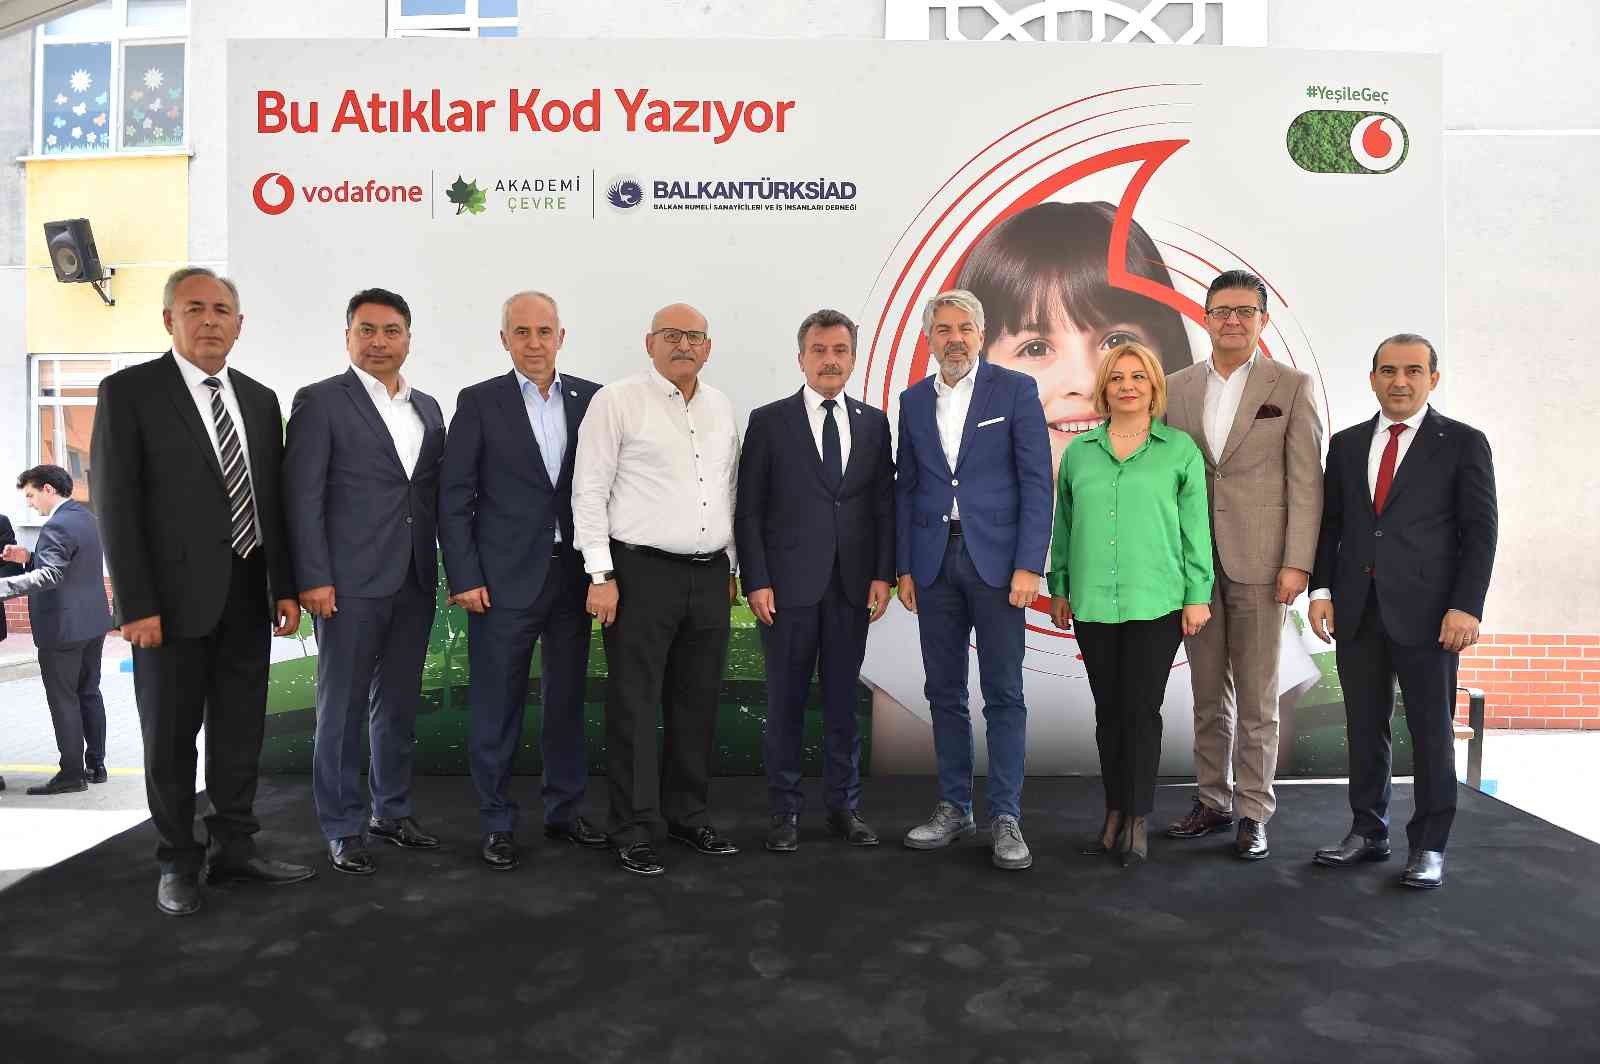 Vodafone, karbon ayakizini küçültme hedefiyle başlattığı “Bu Atıklar Kod Yazıyor” projesini Türkiye geneline yaygınlaştırmayı sürdürüyor. Şirket ...